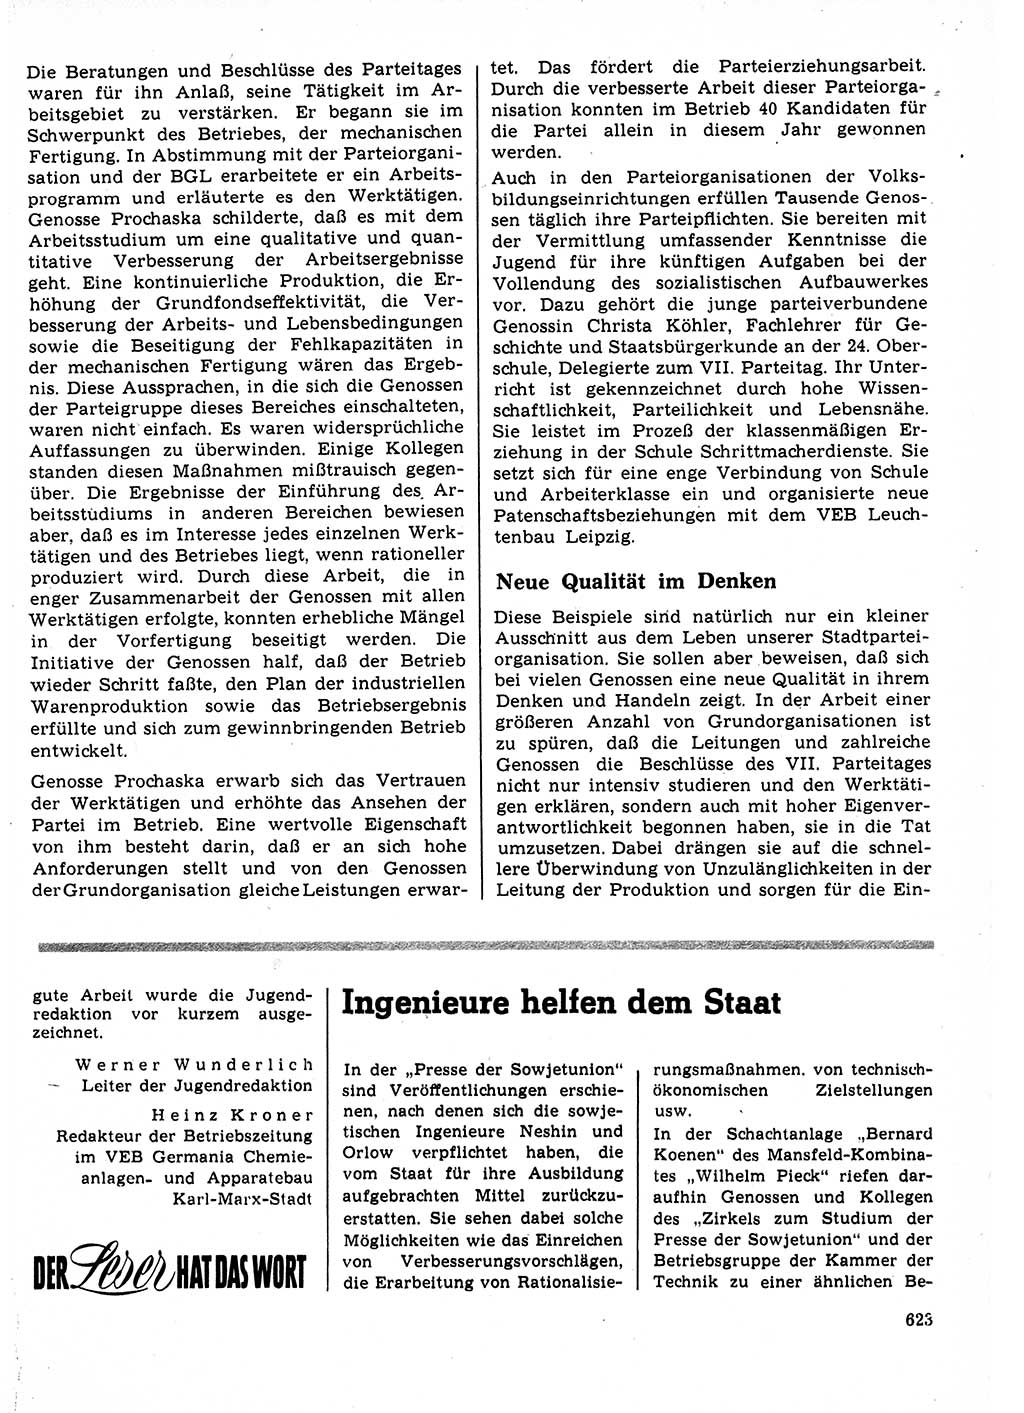 Neuer Weg (NW), Organ des Zentralkomitees (ZK) der SED (Sozialistische Einheitspartei Deutschlands) für Fragen des Parteilebens, 22. Jahrgang [Deutsche Demokratische Republik (DDR)] 1967, Seite 623 (NW ZK SED DDR 1967, S. 623)